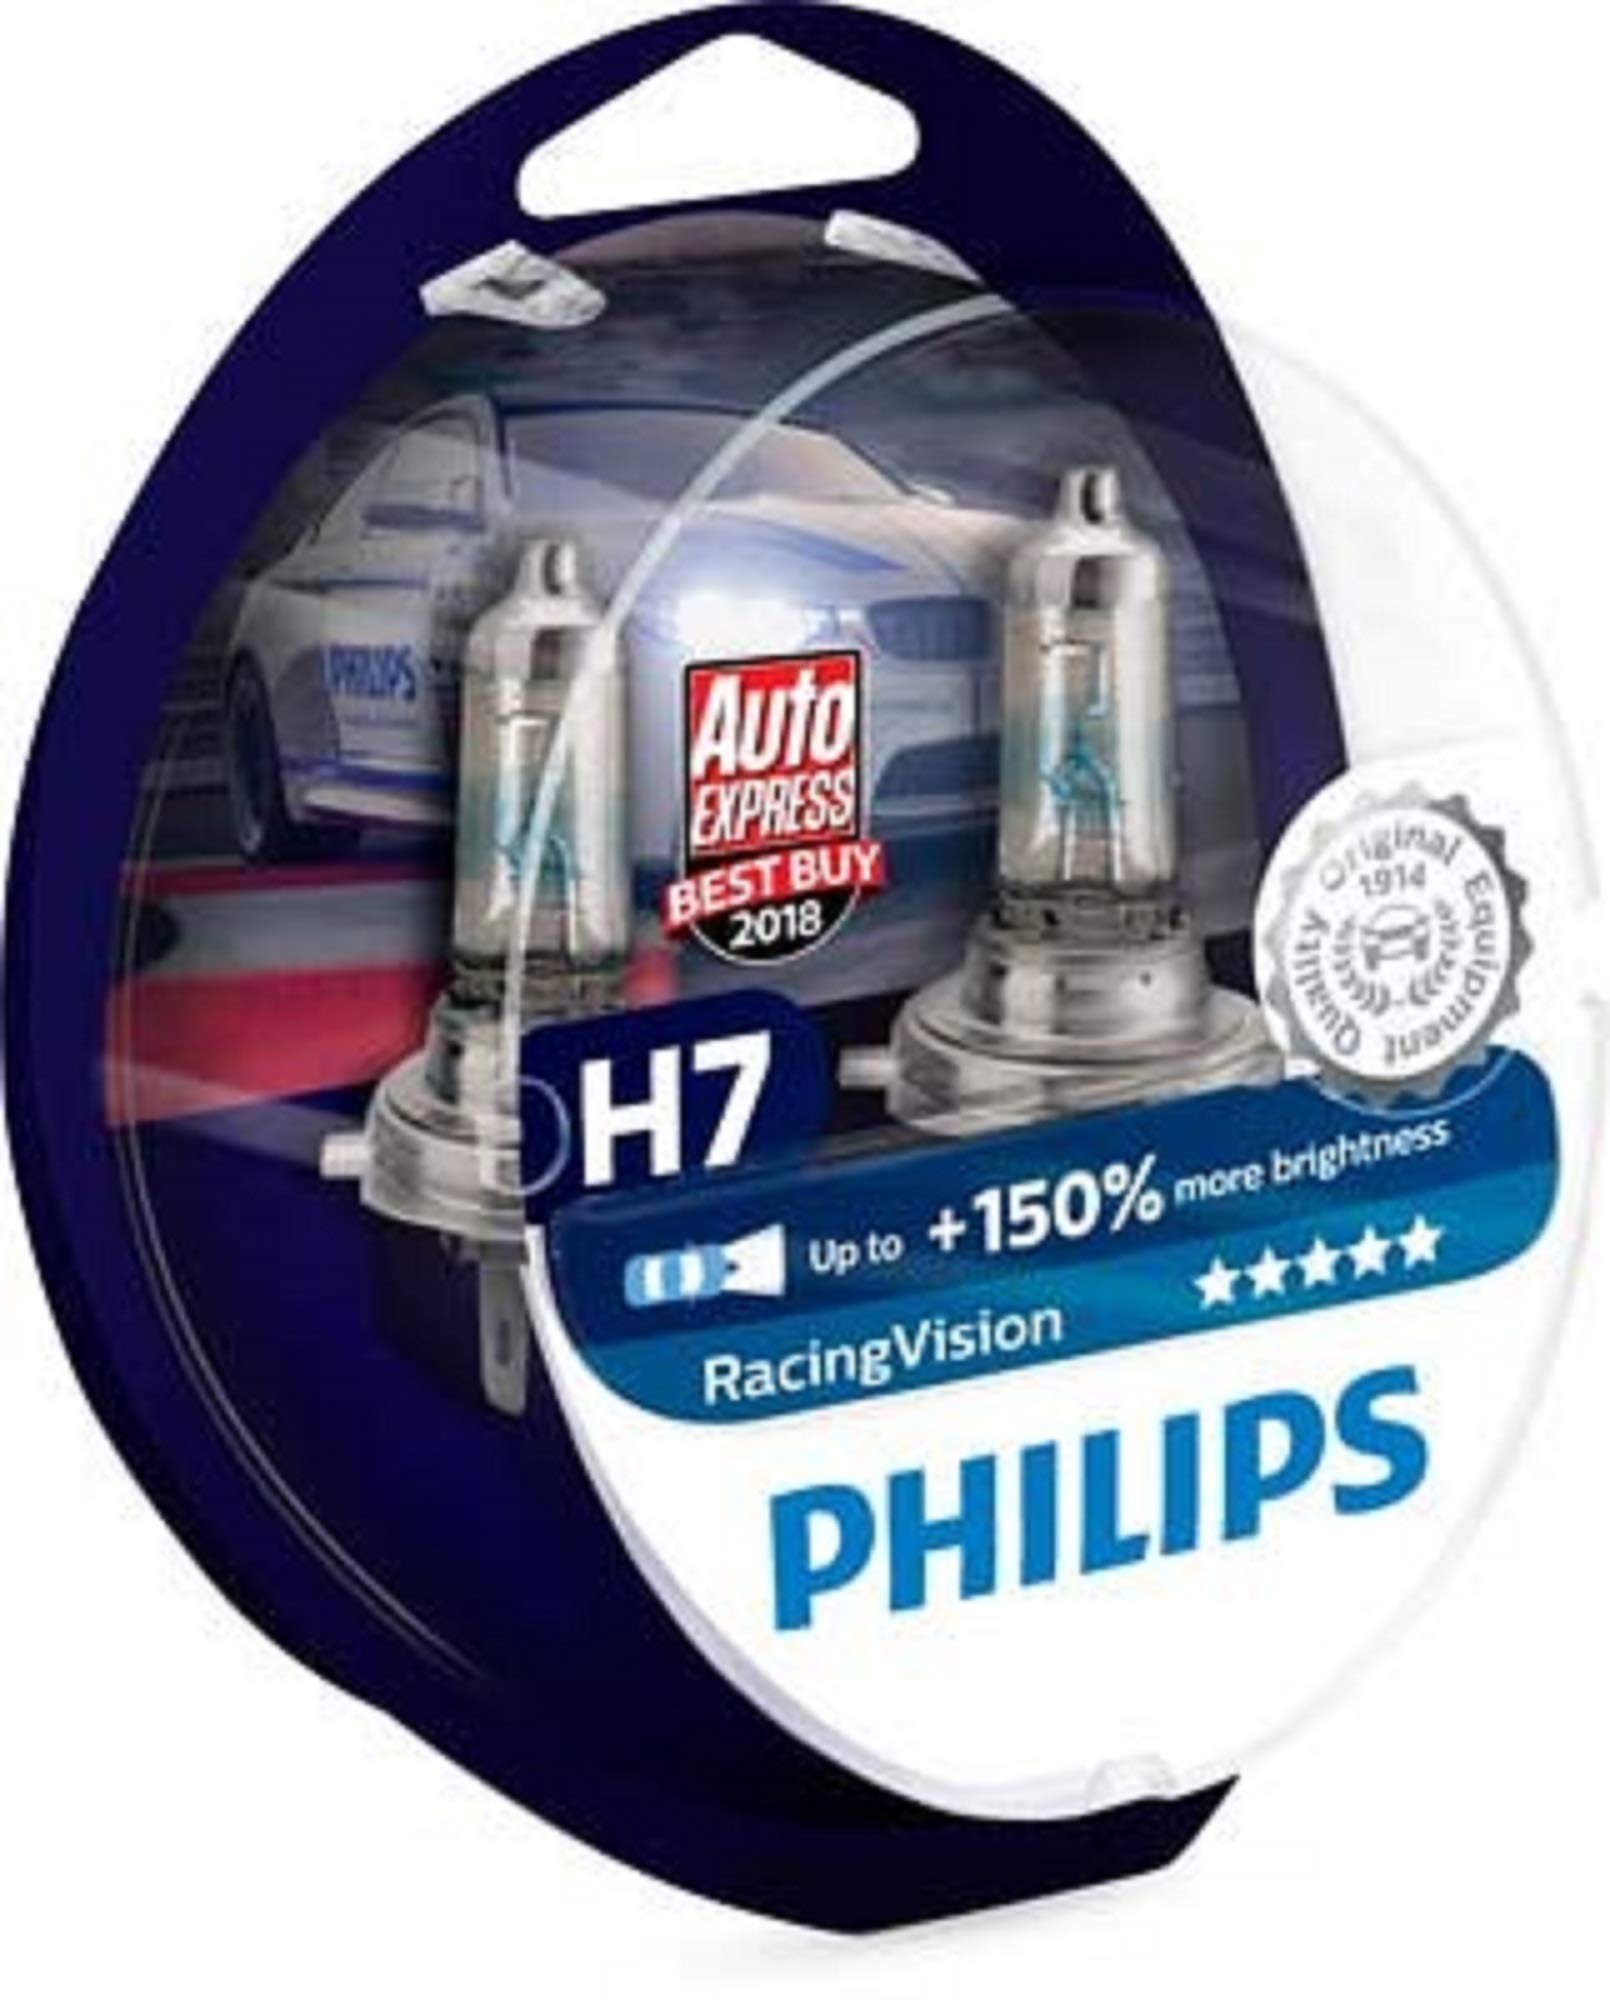 Philips racingvision H7 Lampen Scheinwerfer 12972rvs2 Xtreme Vision Upgrade, 2er Pack von PHILIPS